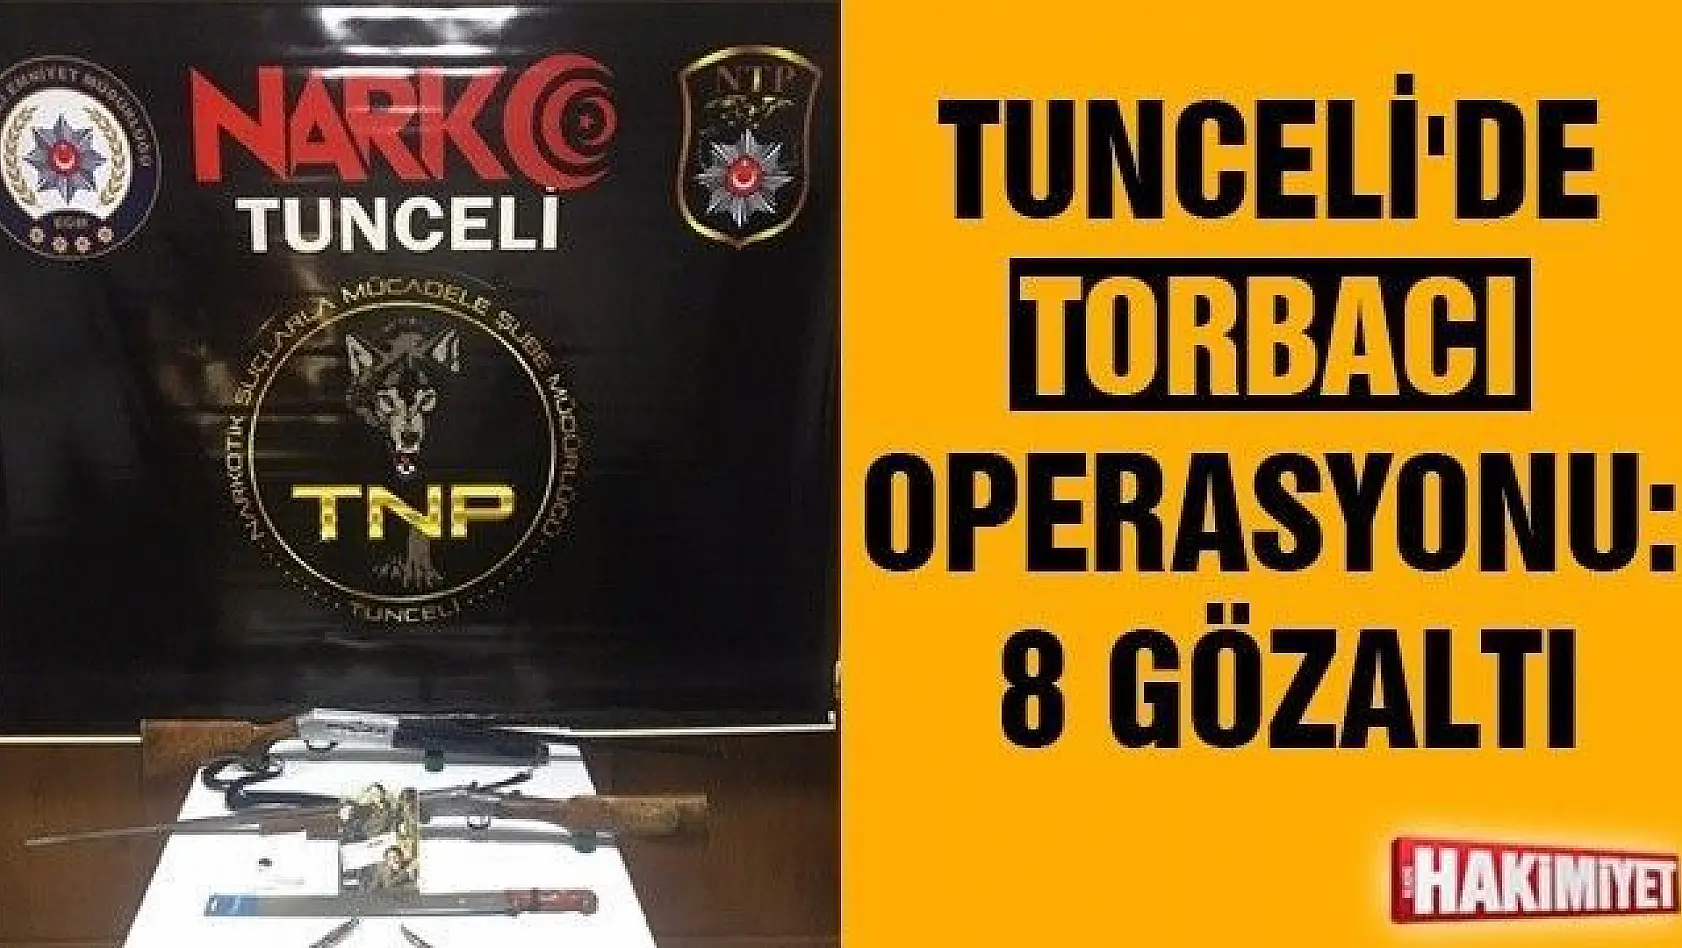 Tunceli'de torbacı operasyonu: 8 gözaltı